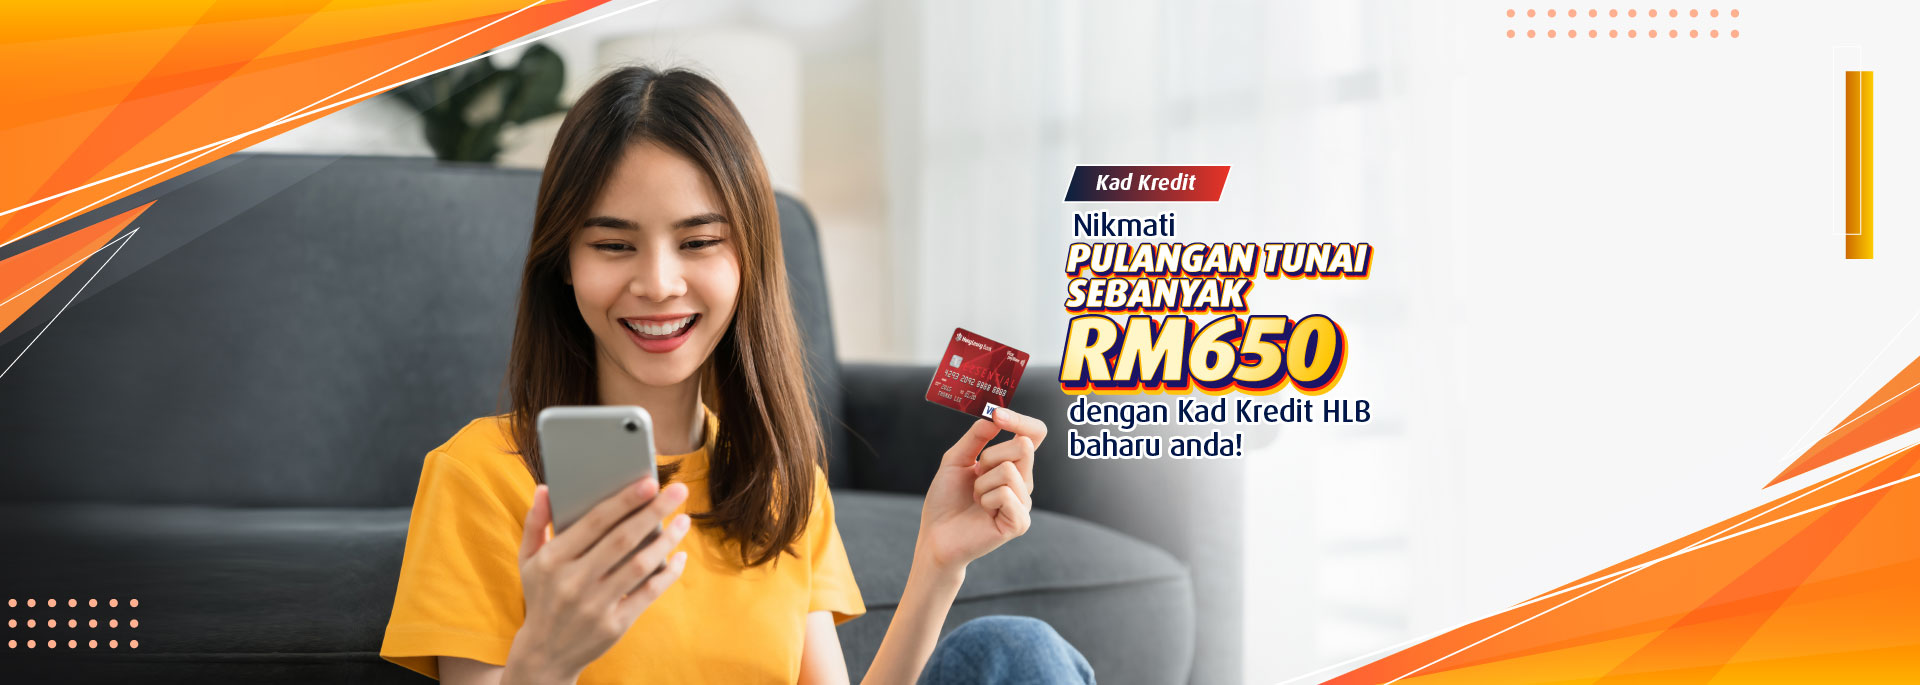 Dapatkan Pulangan Tunai sebanyak RM650 dengan Kad Kredit HLB baharu anda adalah semudah ABC